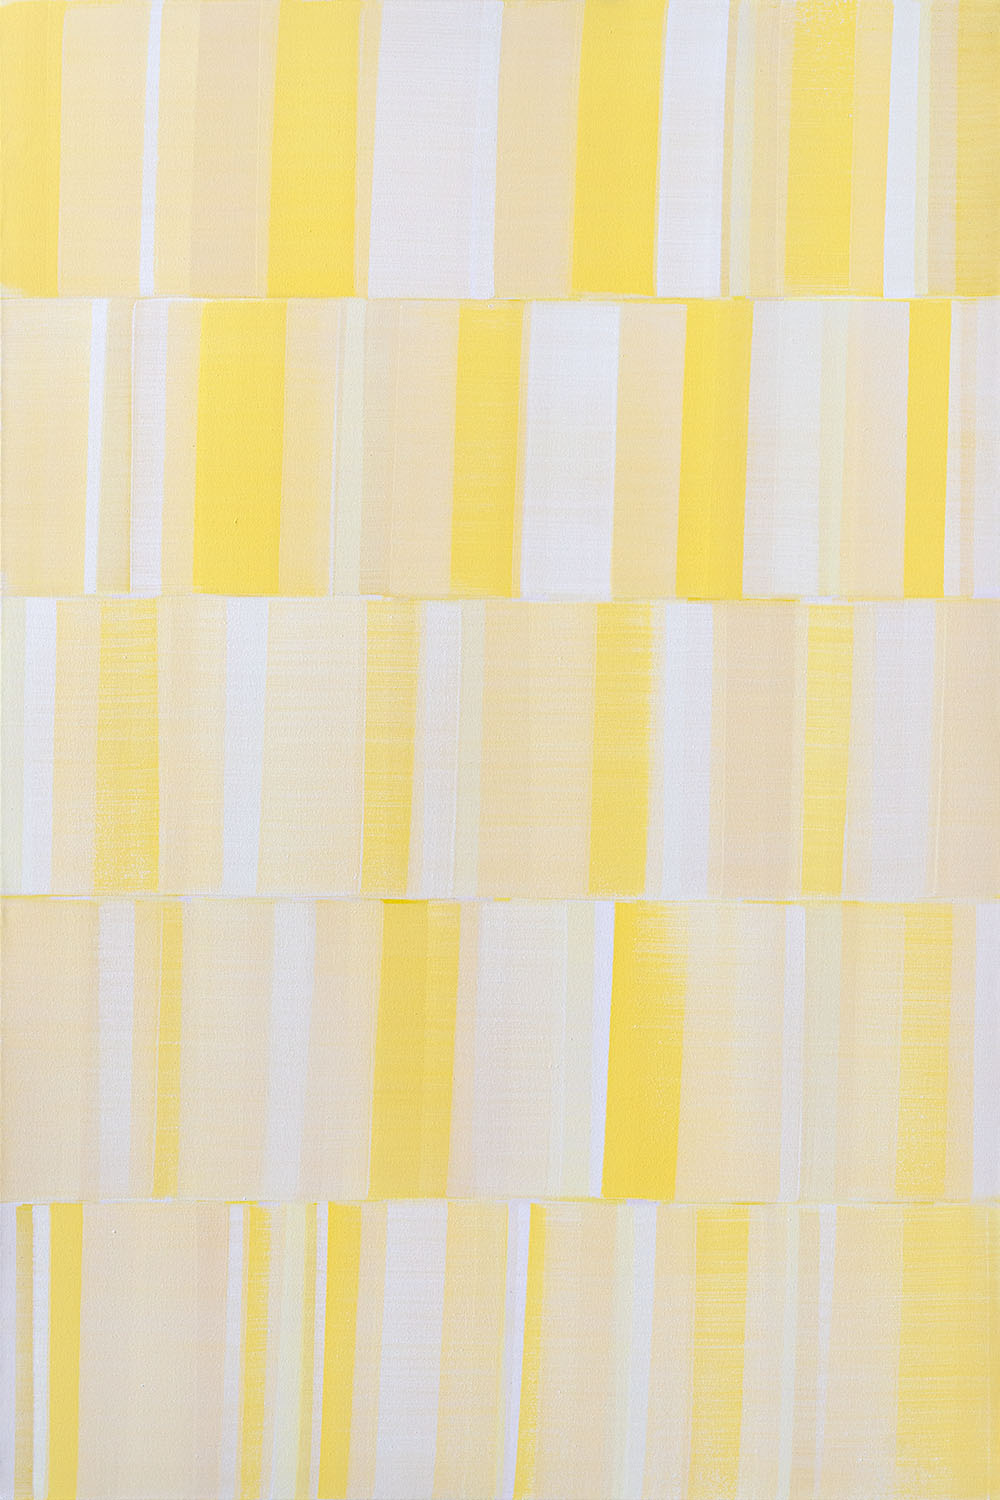 Nikola Dimitrov, FarbraumGelb I, 2019, Pigmente, Bindemittel auf Leinwand, 150 × 100 cm